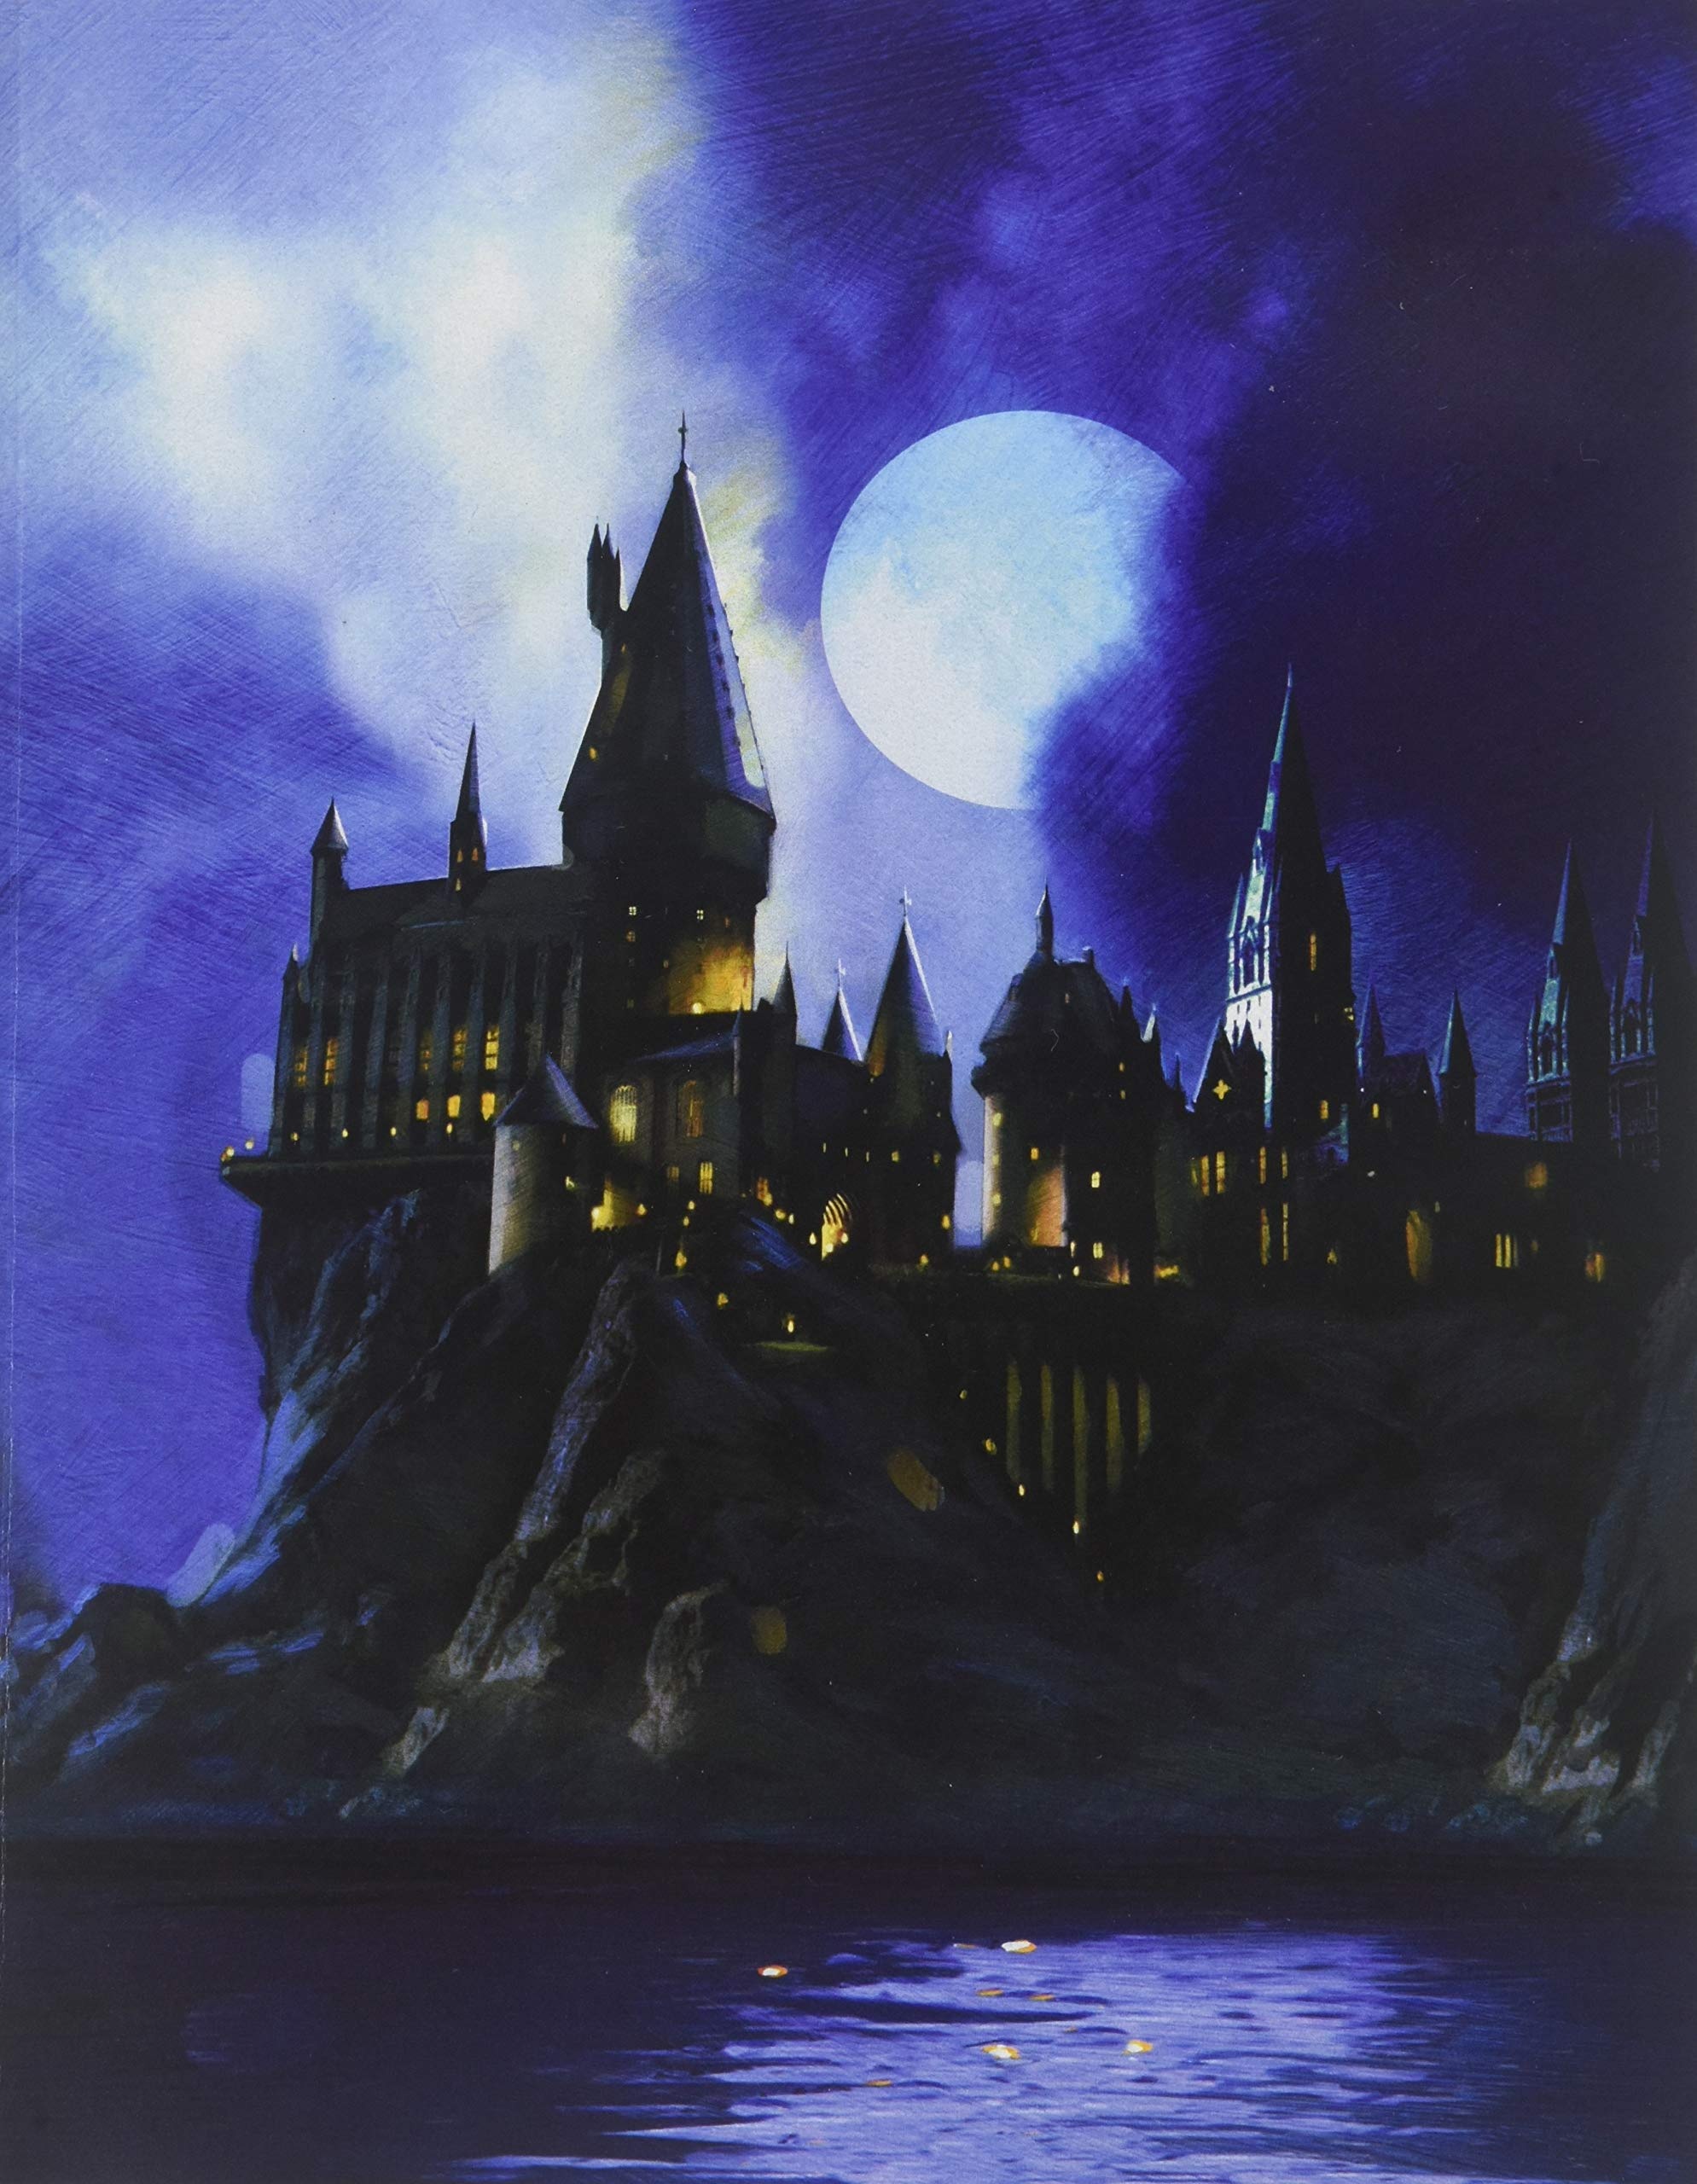 Hogwarts Castle, Hogwarts Castle pop-up card, Harry Potter fan collectibles, Hogwarts castle merchandise, 1990x2560 HD Phone